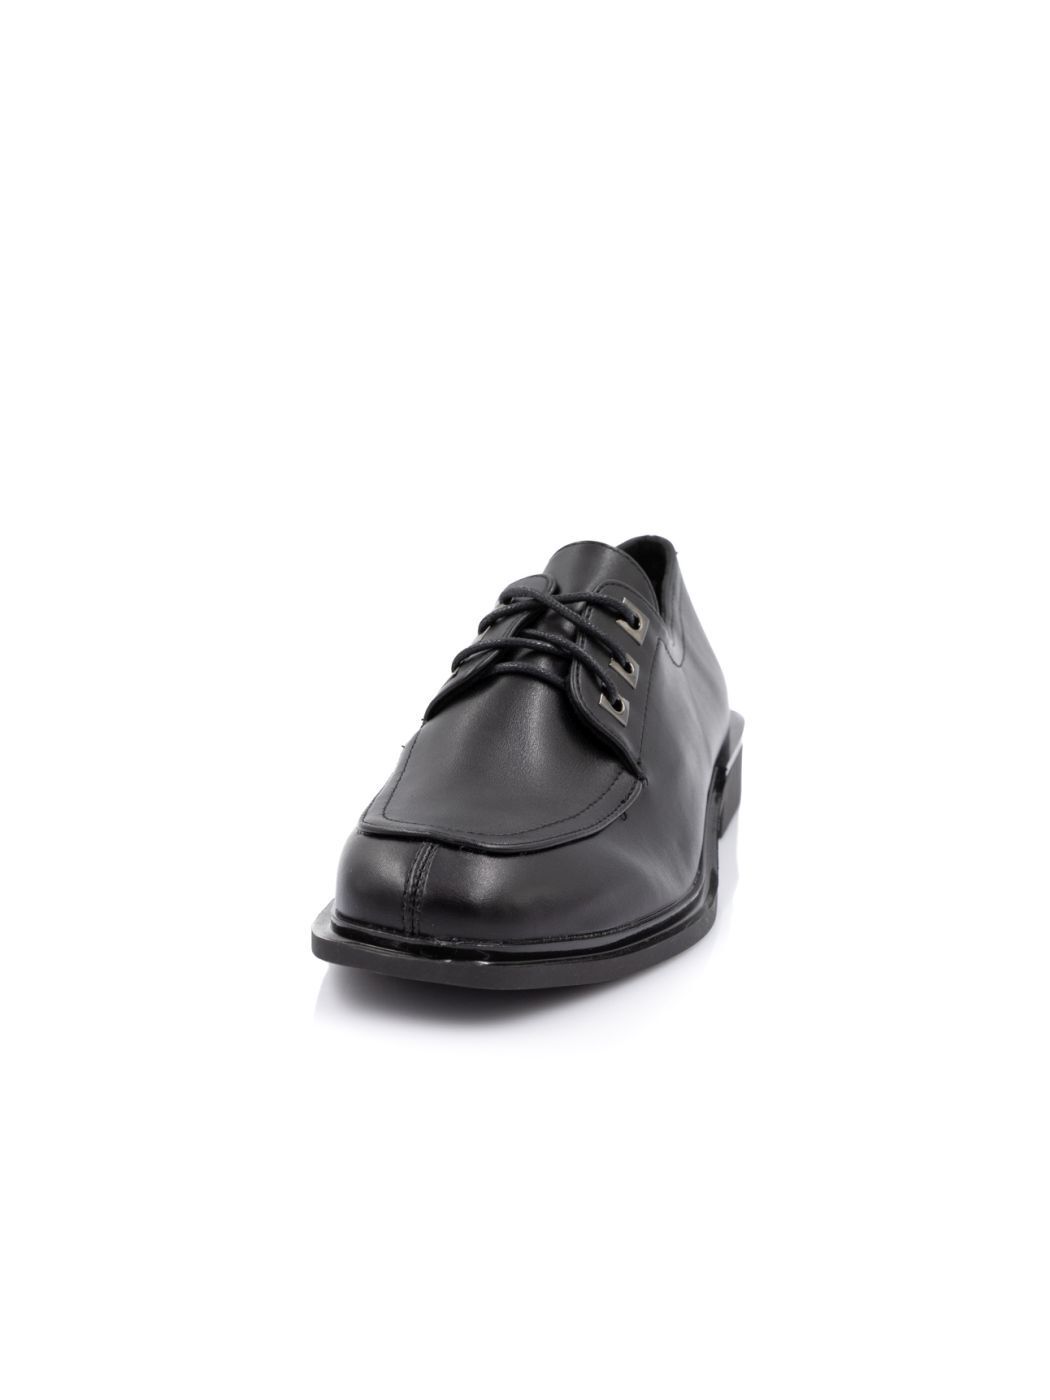 Туфли Oxfords женские черные экокожа каблук устойчивый демисезон 7M вид 2